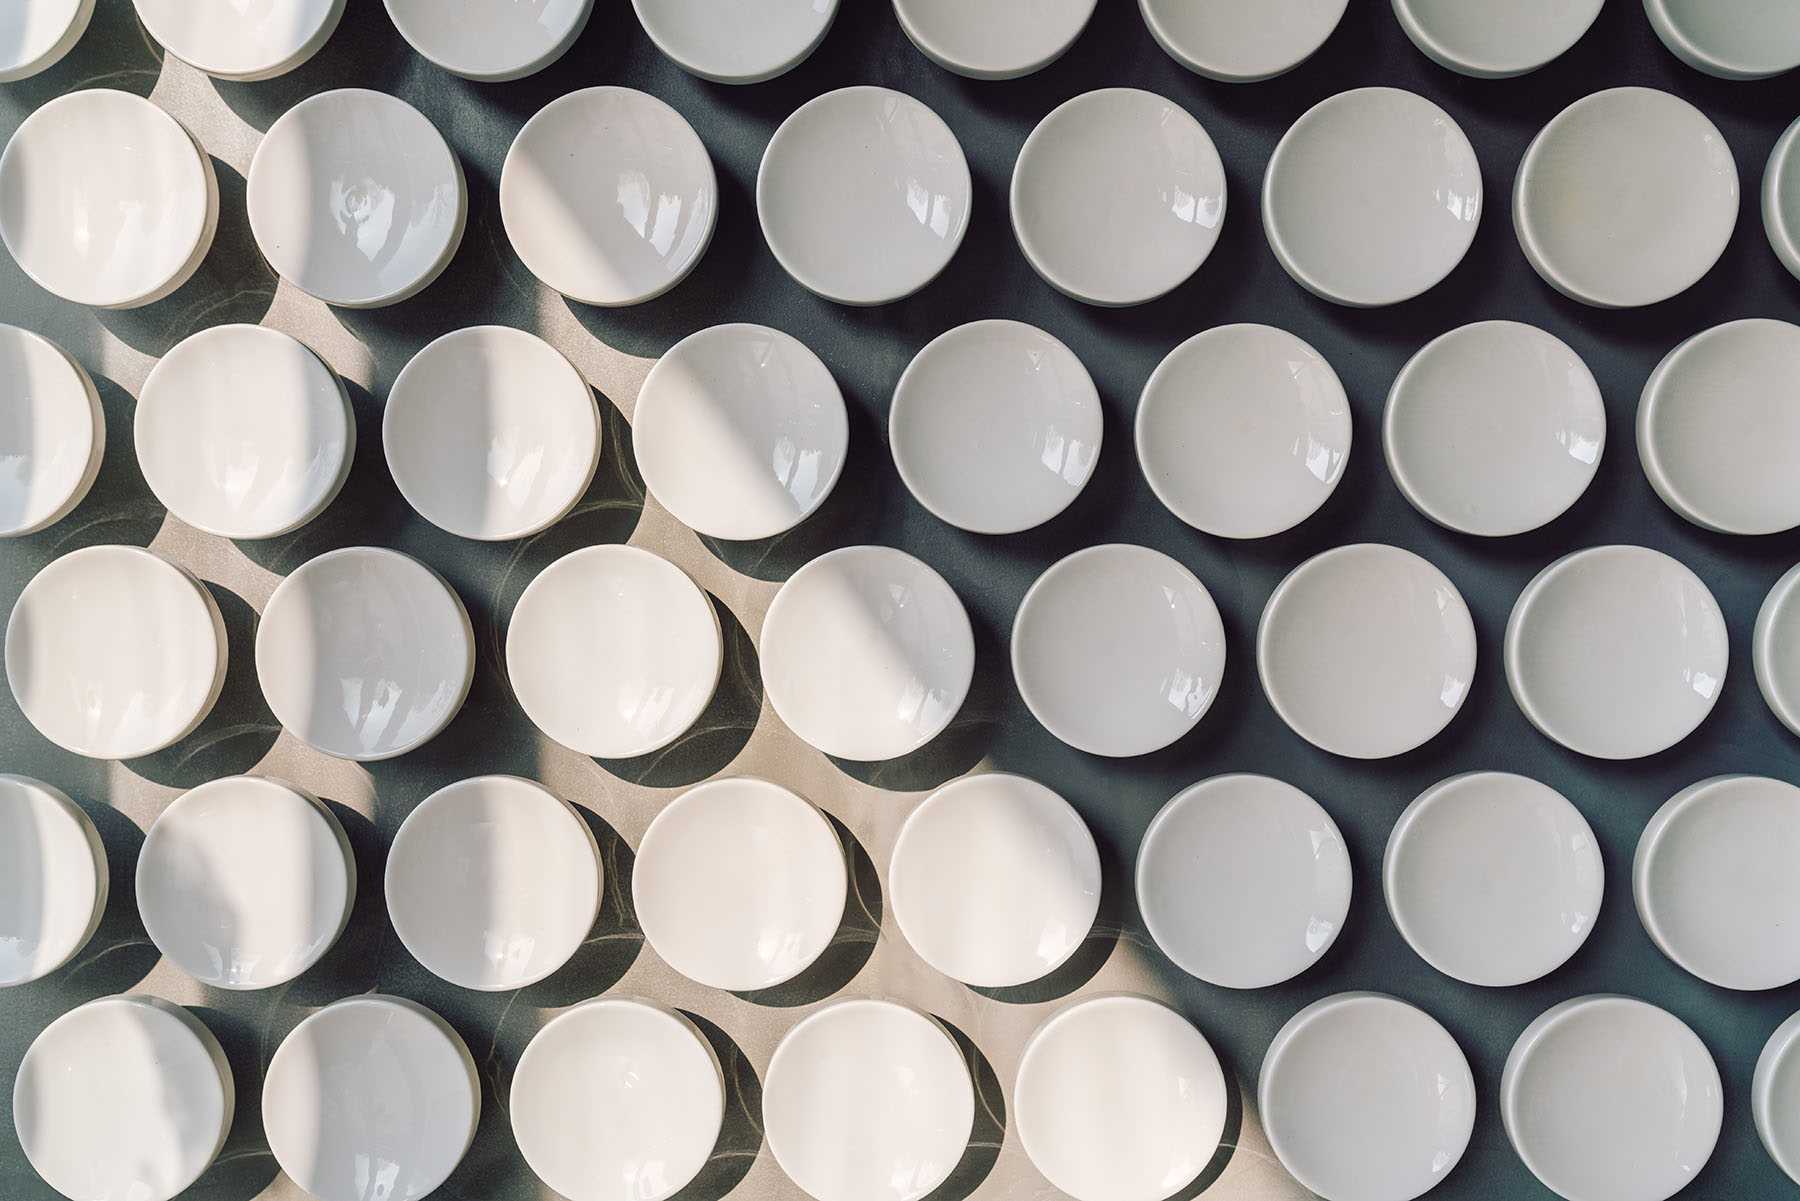 Mais de 500 discos de cerâmica feitos à mão revestem a parede desta moderna clínica odontológica.